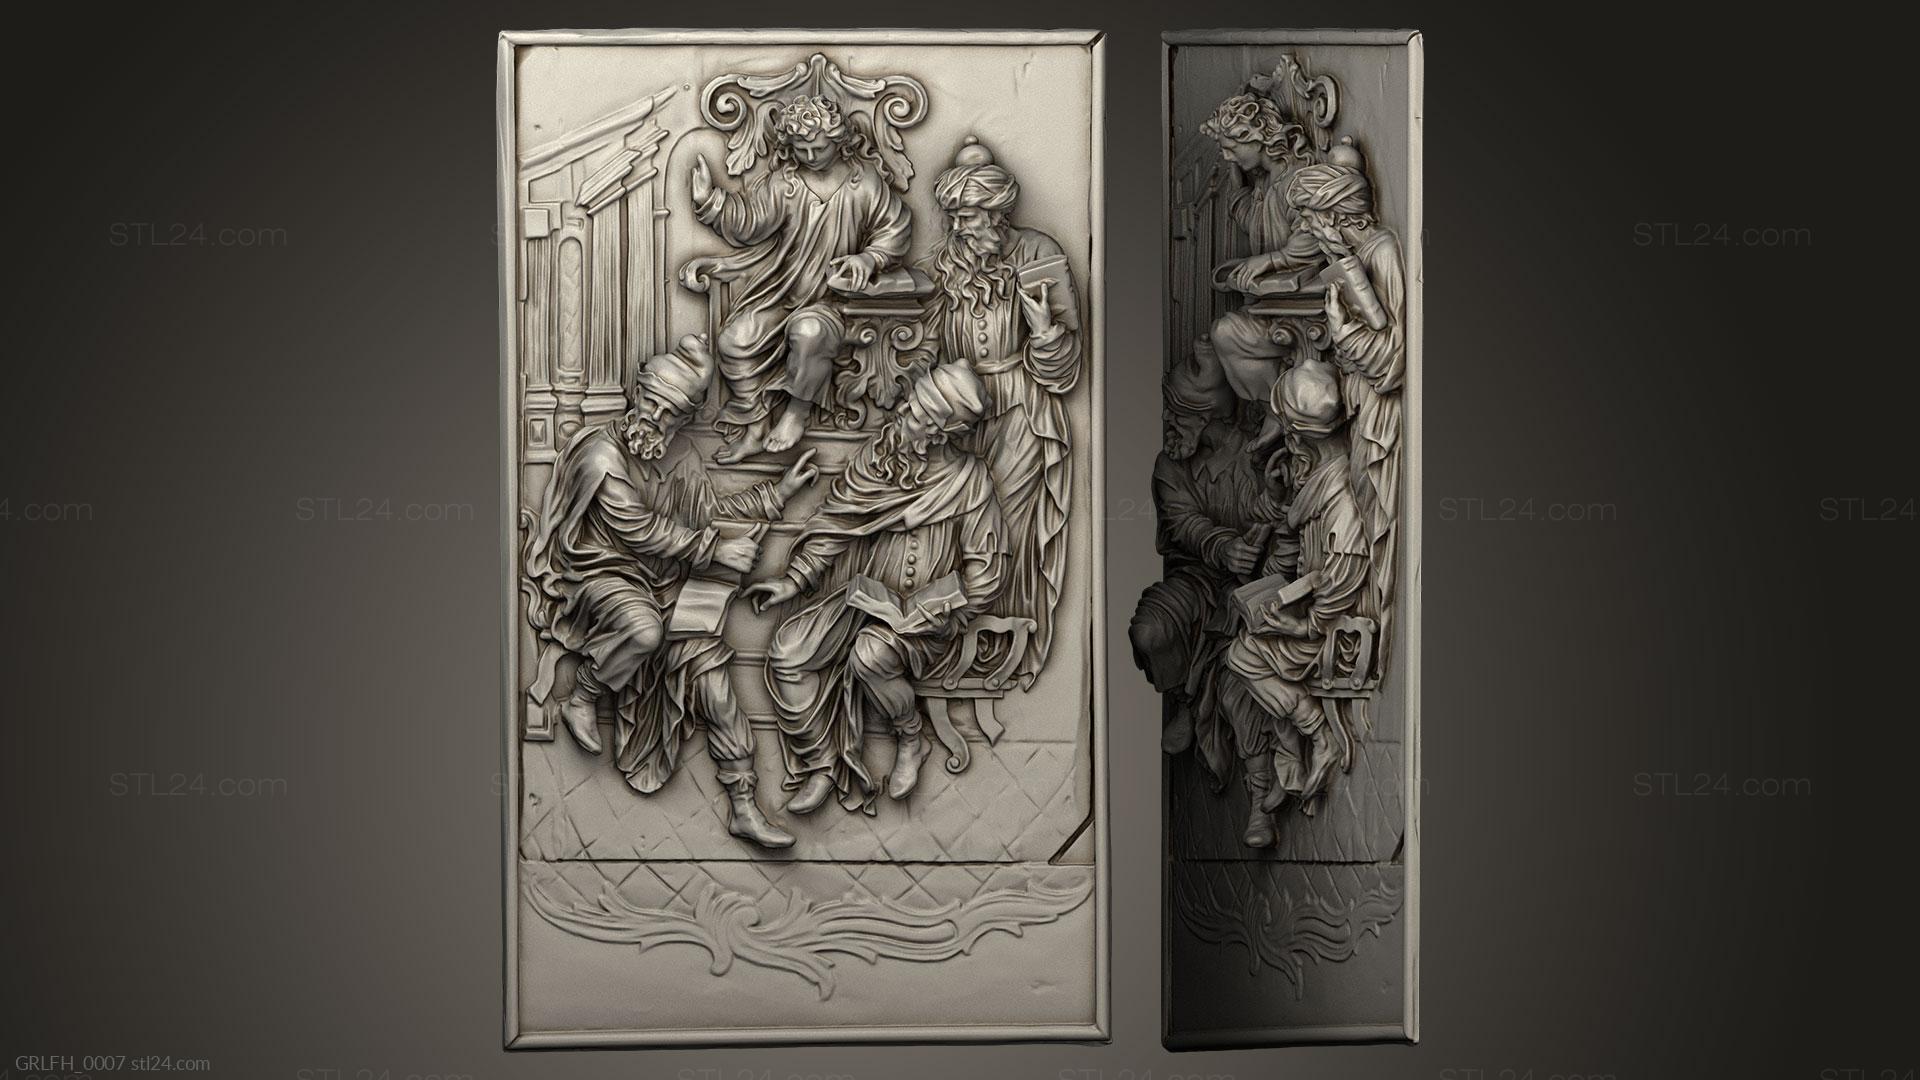 Горельефы и барельефы исторические и религиозные (Христос среди врачей, GRLFH_0007) 3D модель для ЧПУ станка